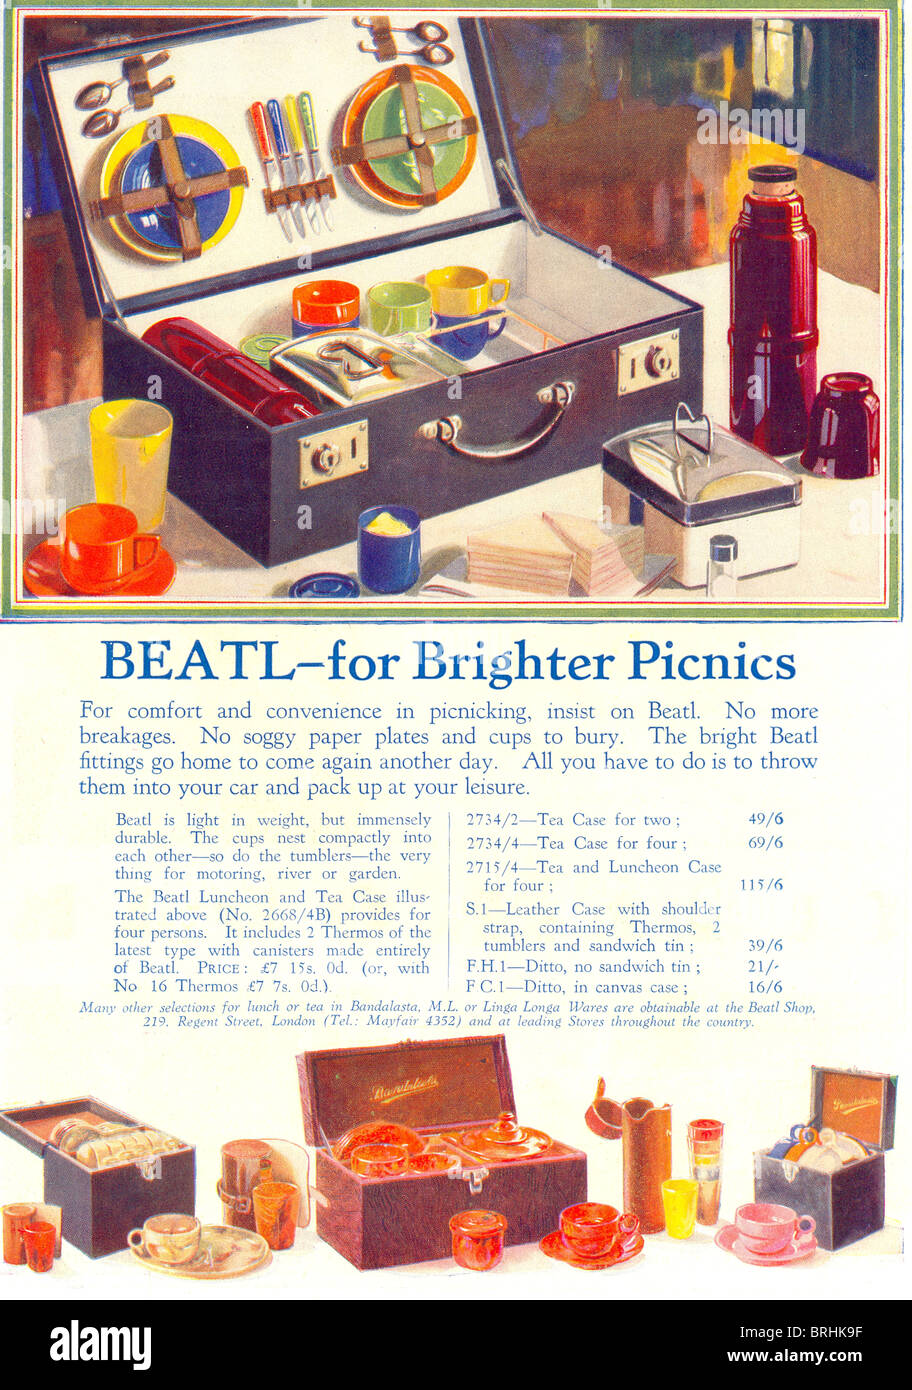 Werbung für Beatl Ware für hellere Picknicks 1930 Stockfoto